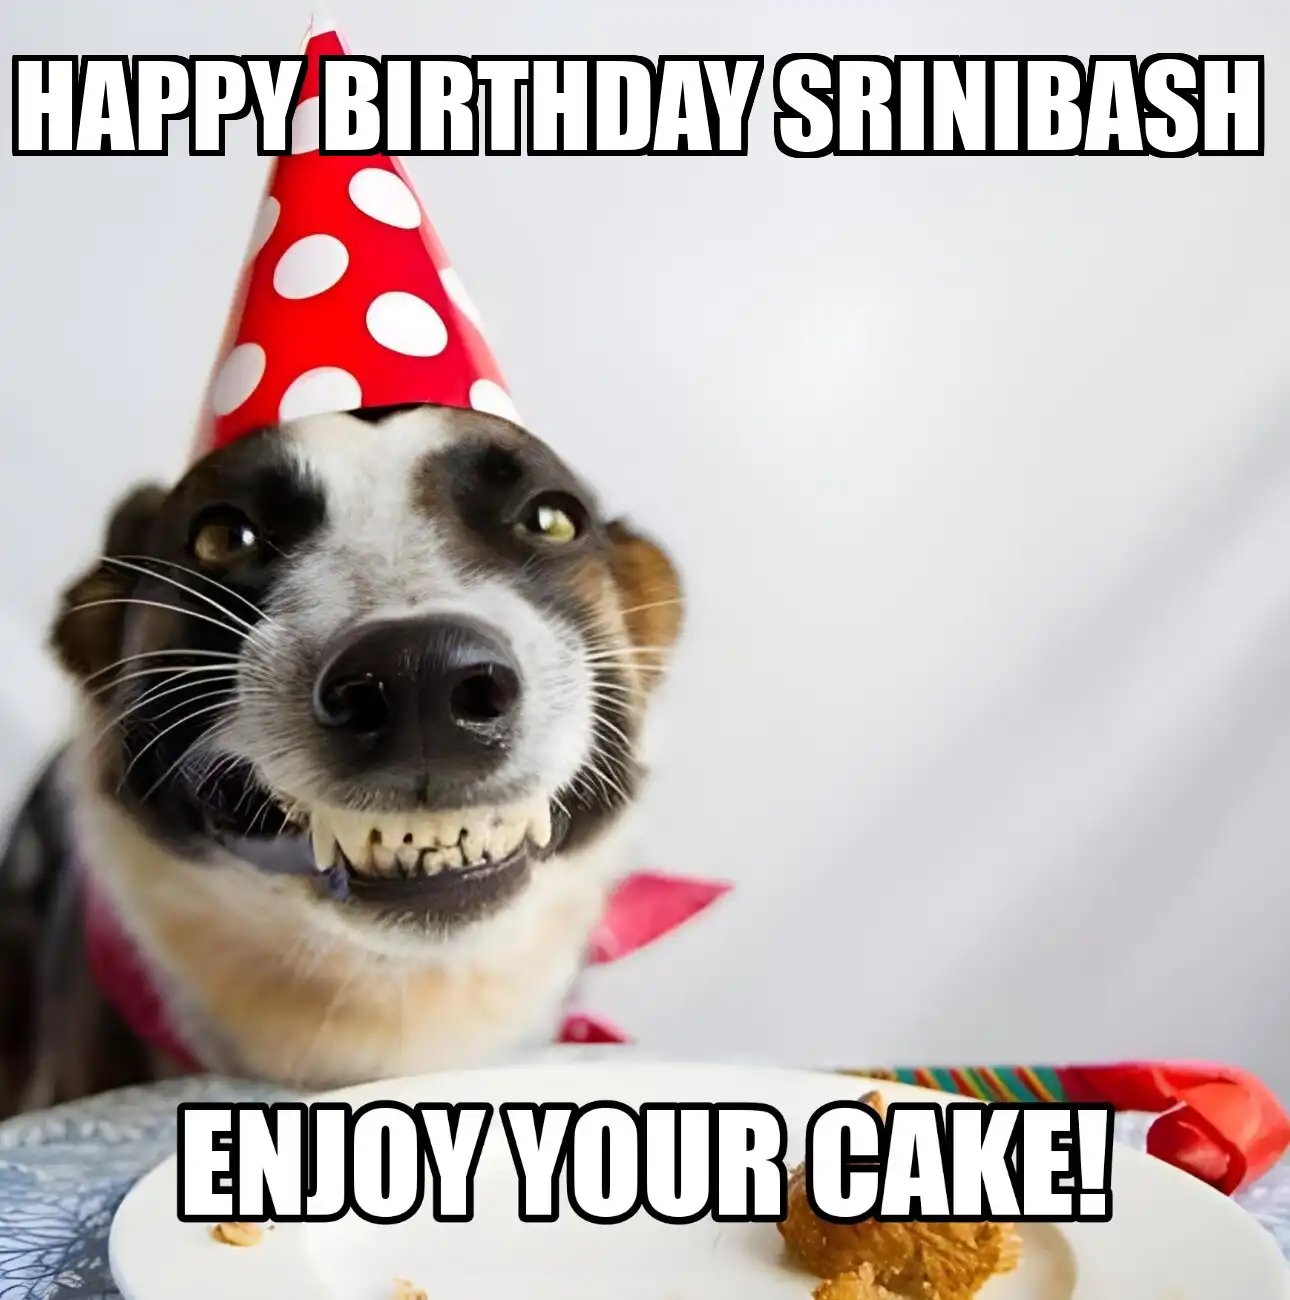 Happy Birthday Srinibash Enjoy Your Cake Dog Meme